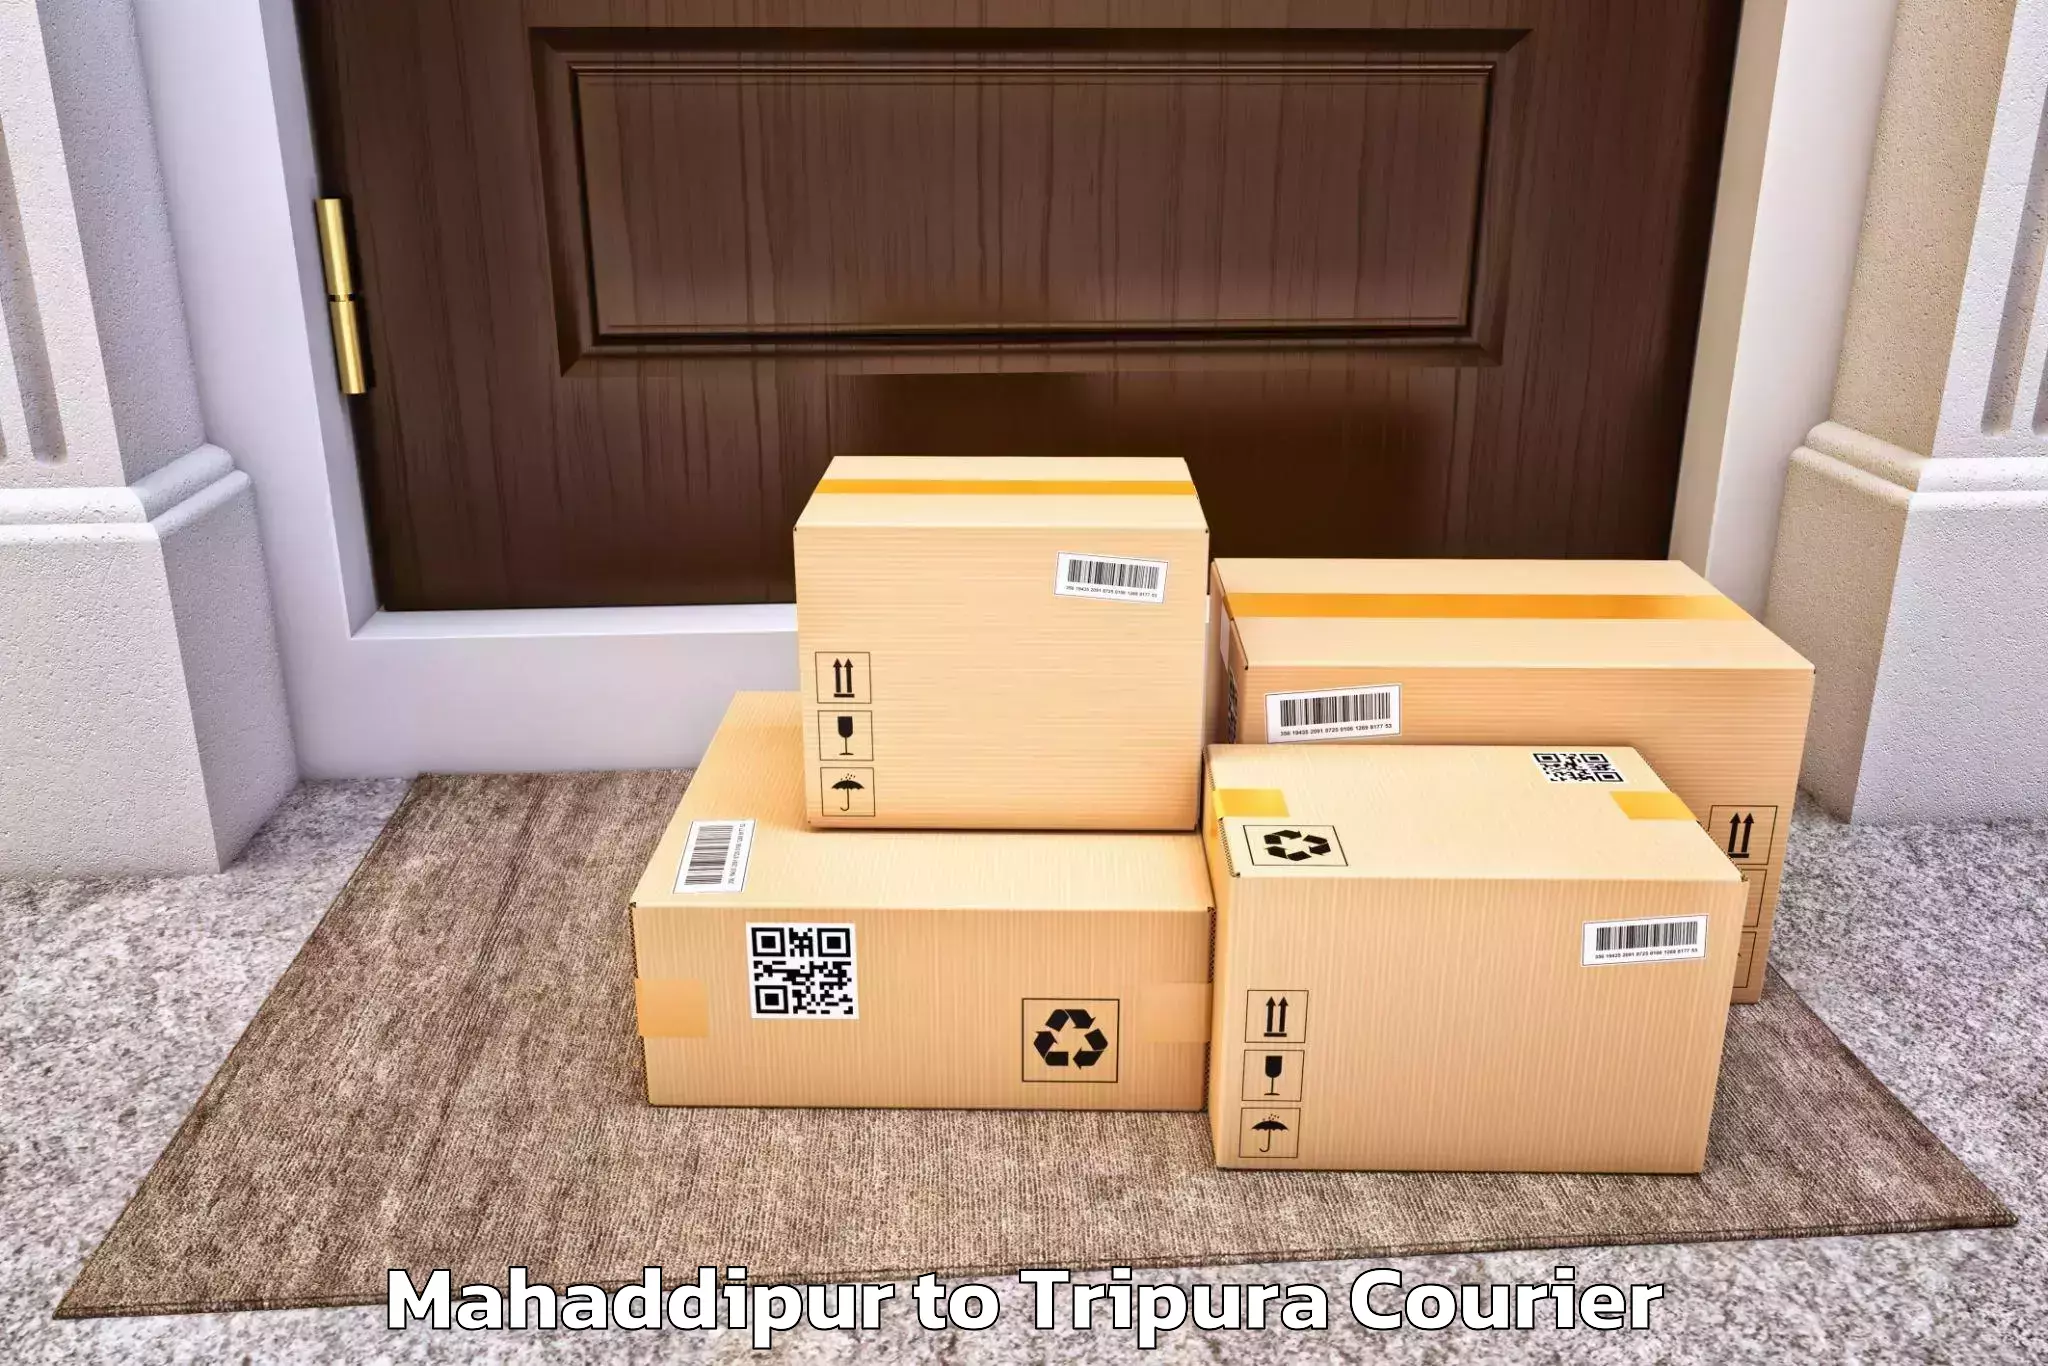 Premium furniture transport Mahaddipur to Tripura